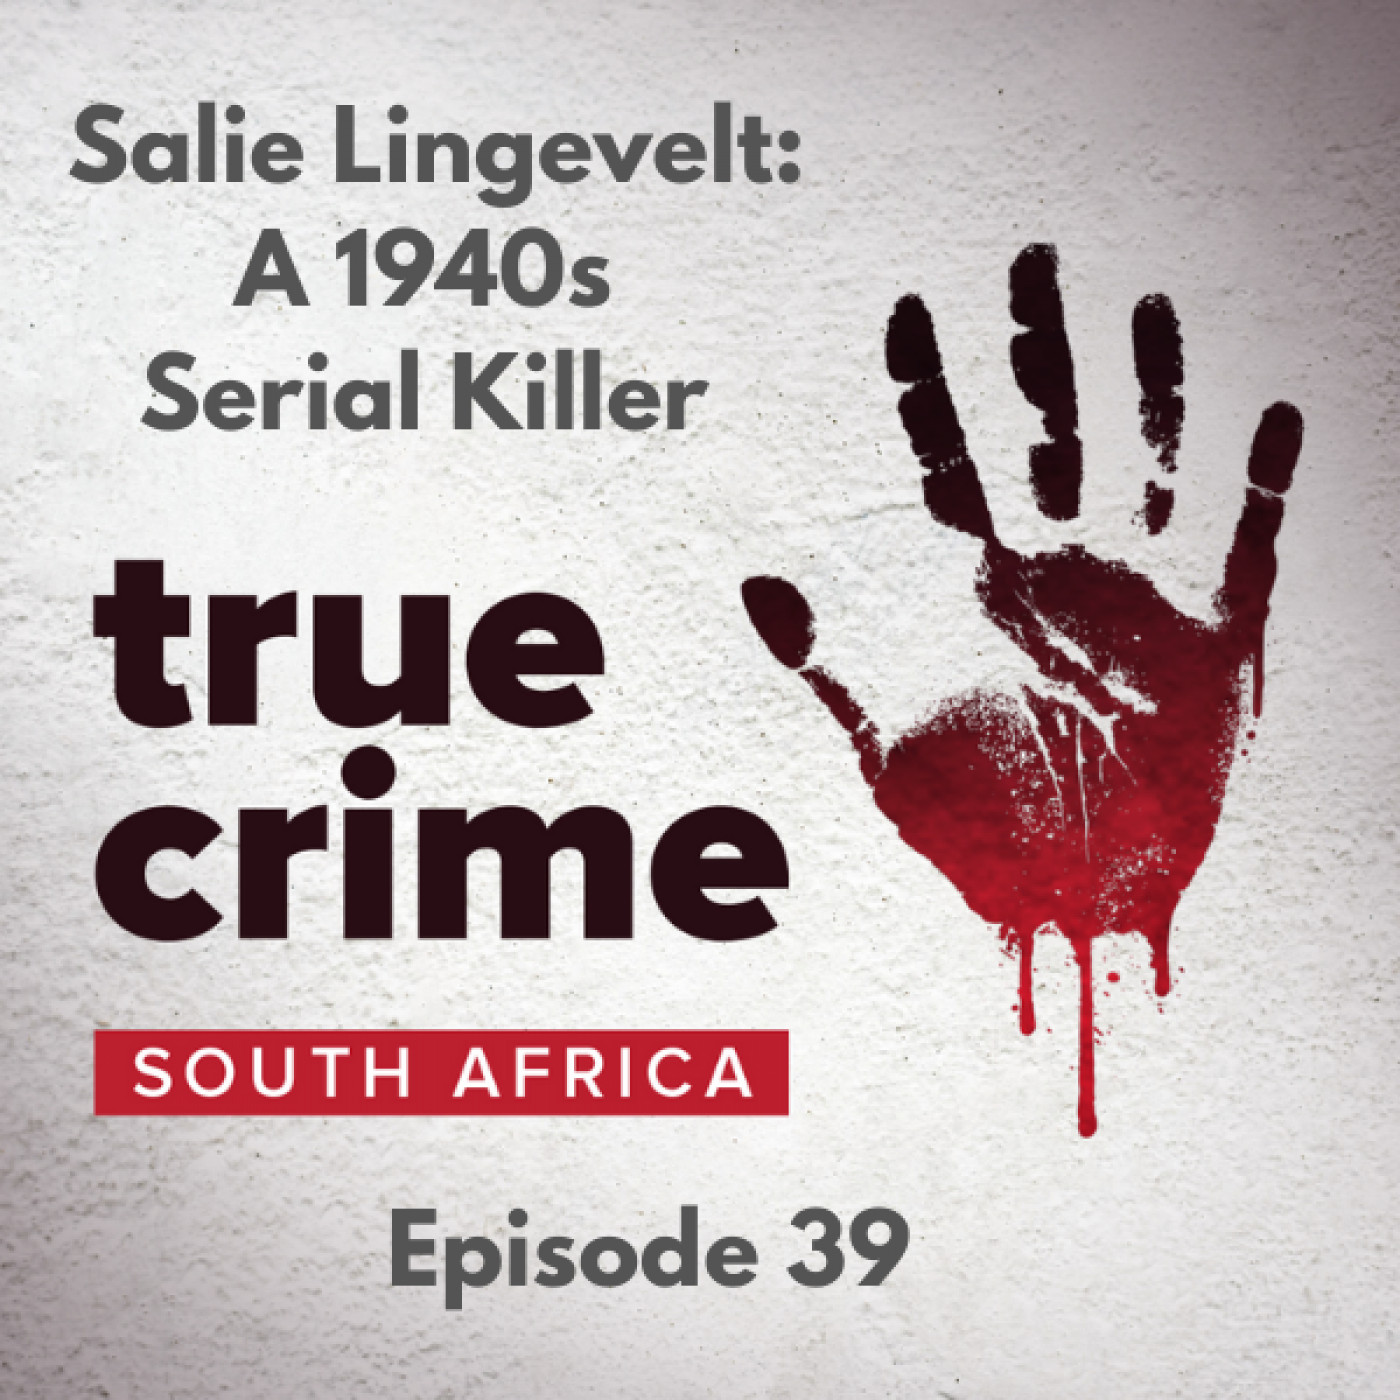 Episode 39 - Salie Lingevelt: A 1940s Serial Killer